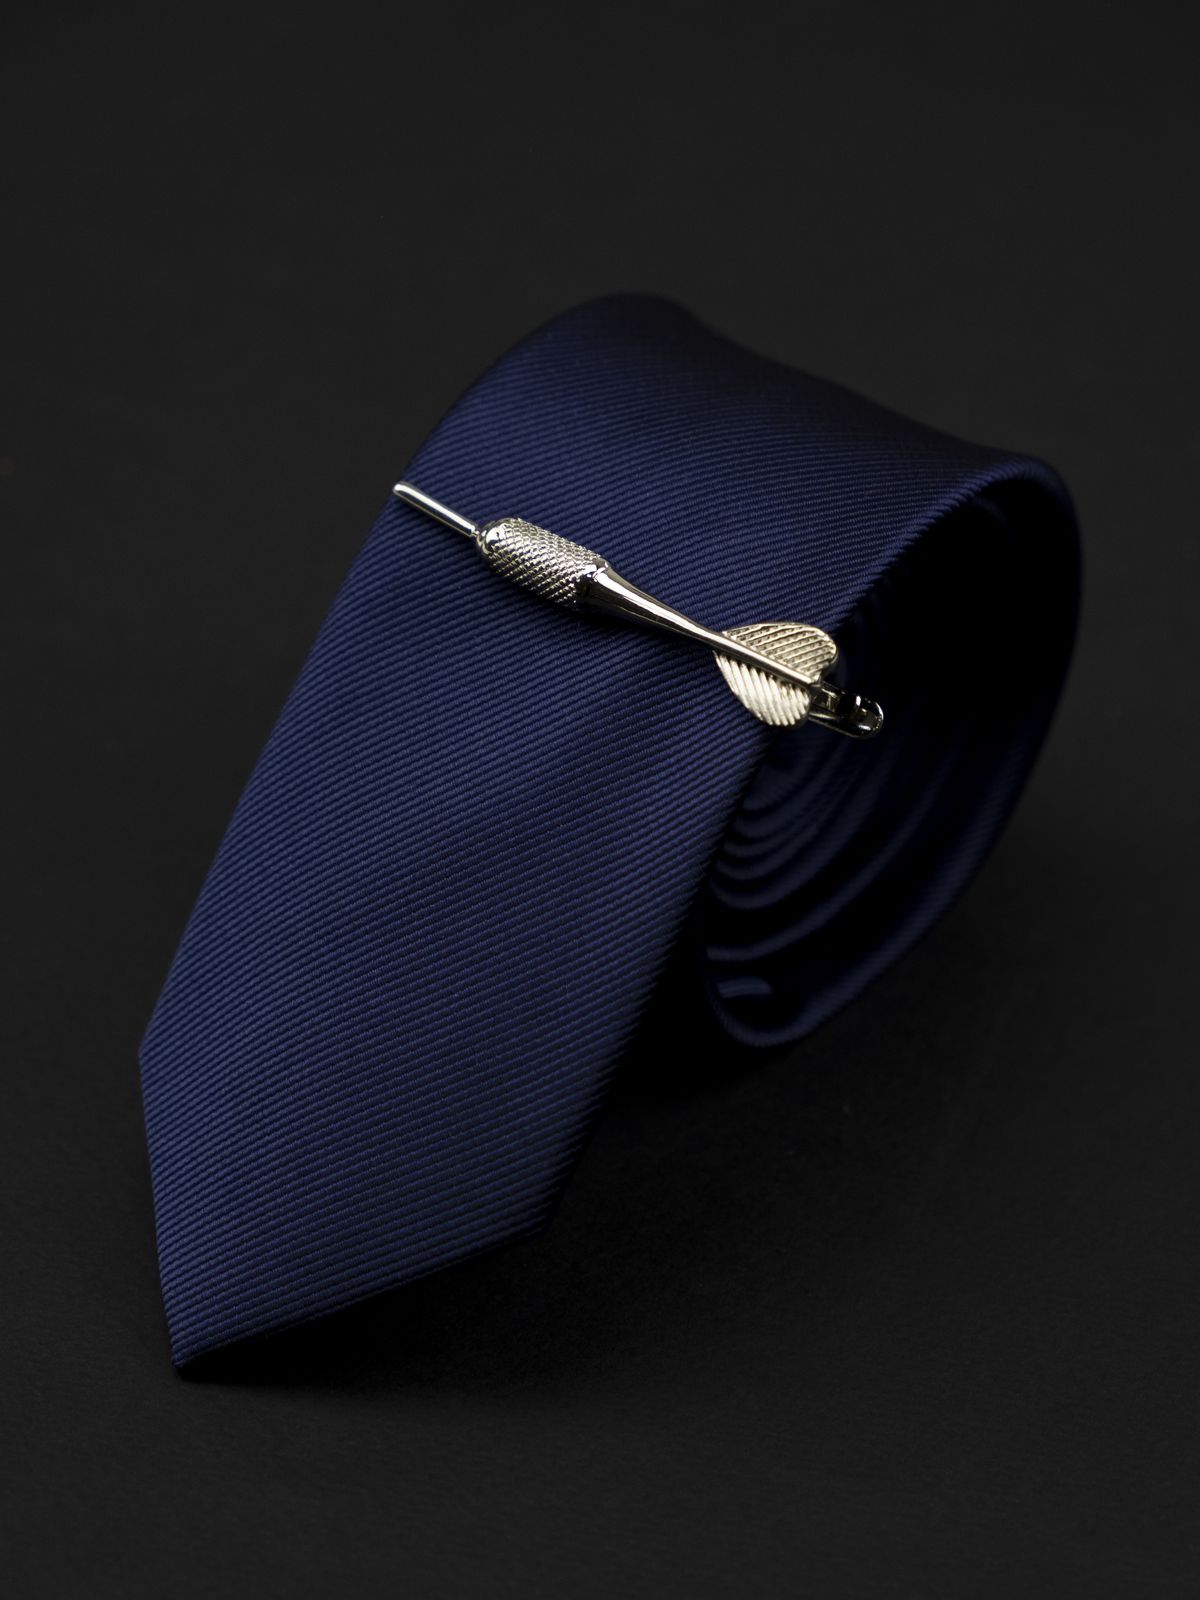 Зажим для галстука дротик серебристый купить. Состав: Ювелирная сталь 316L, Цвет: Стальной, Габариты: 60 мм х 10 мм (в самой широкой части), Вес: 23 гр.; 